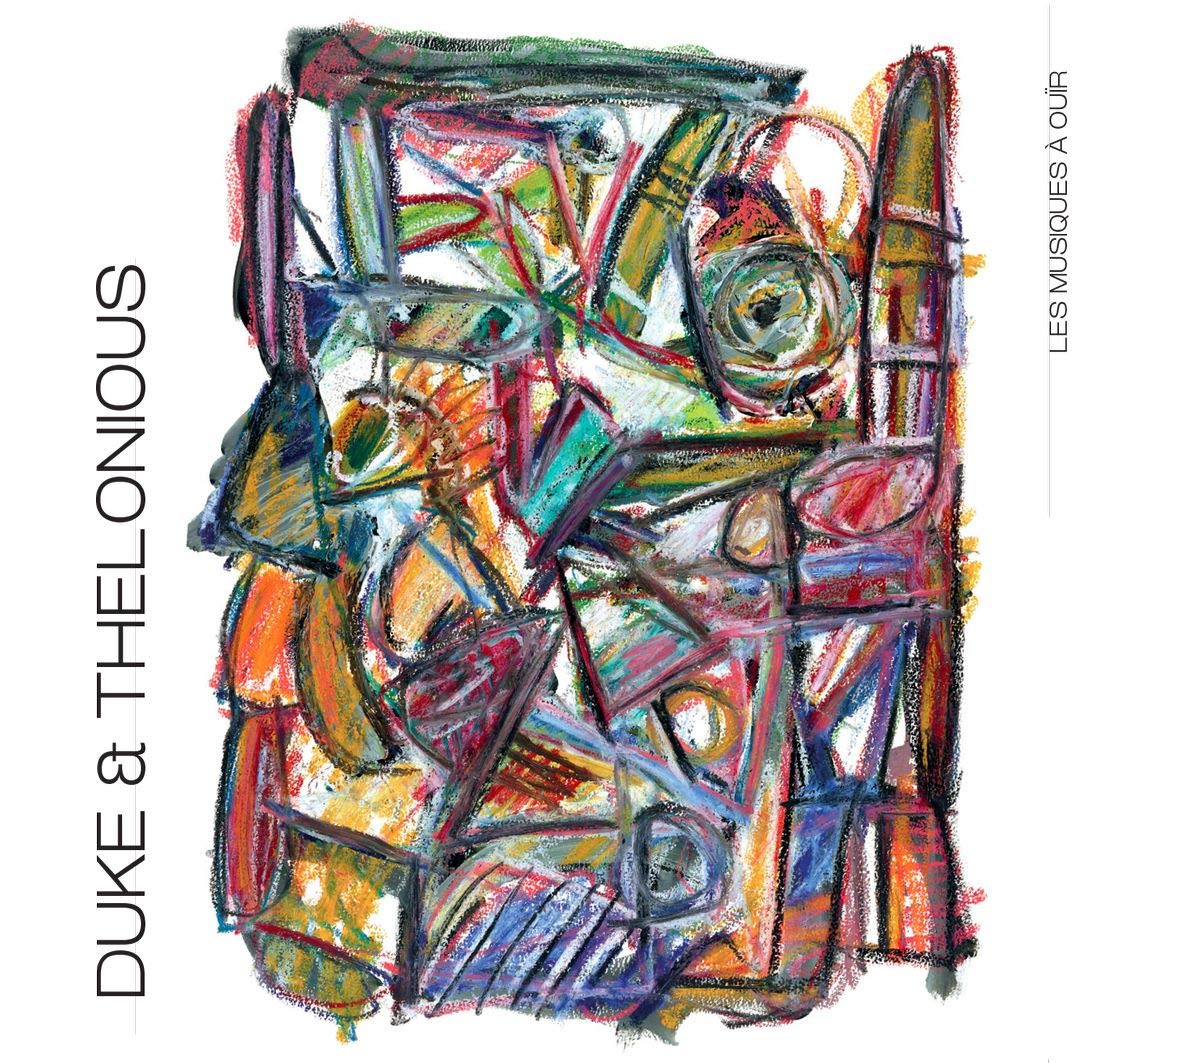 Les Musiques à ouïr (Denis Charolles) - Duke & Thelonious